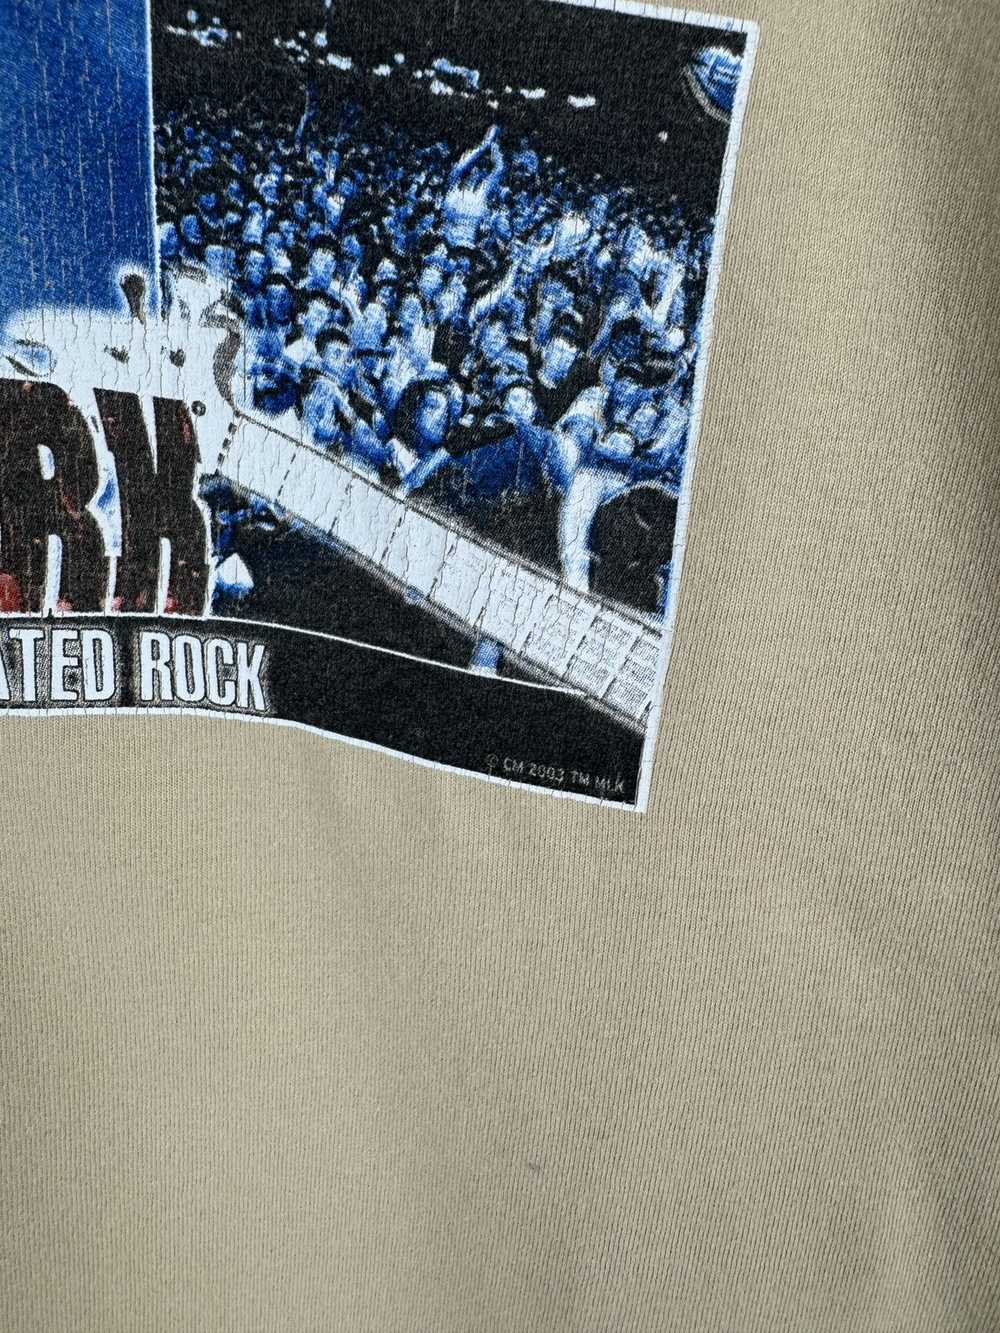 Mtv × Rock T Shirt × Vintage MTV vintage 2003 Roc… - image 8